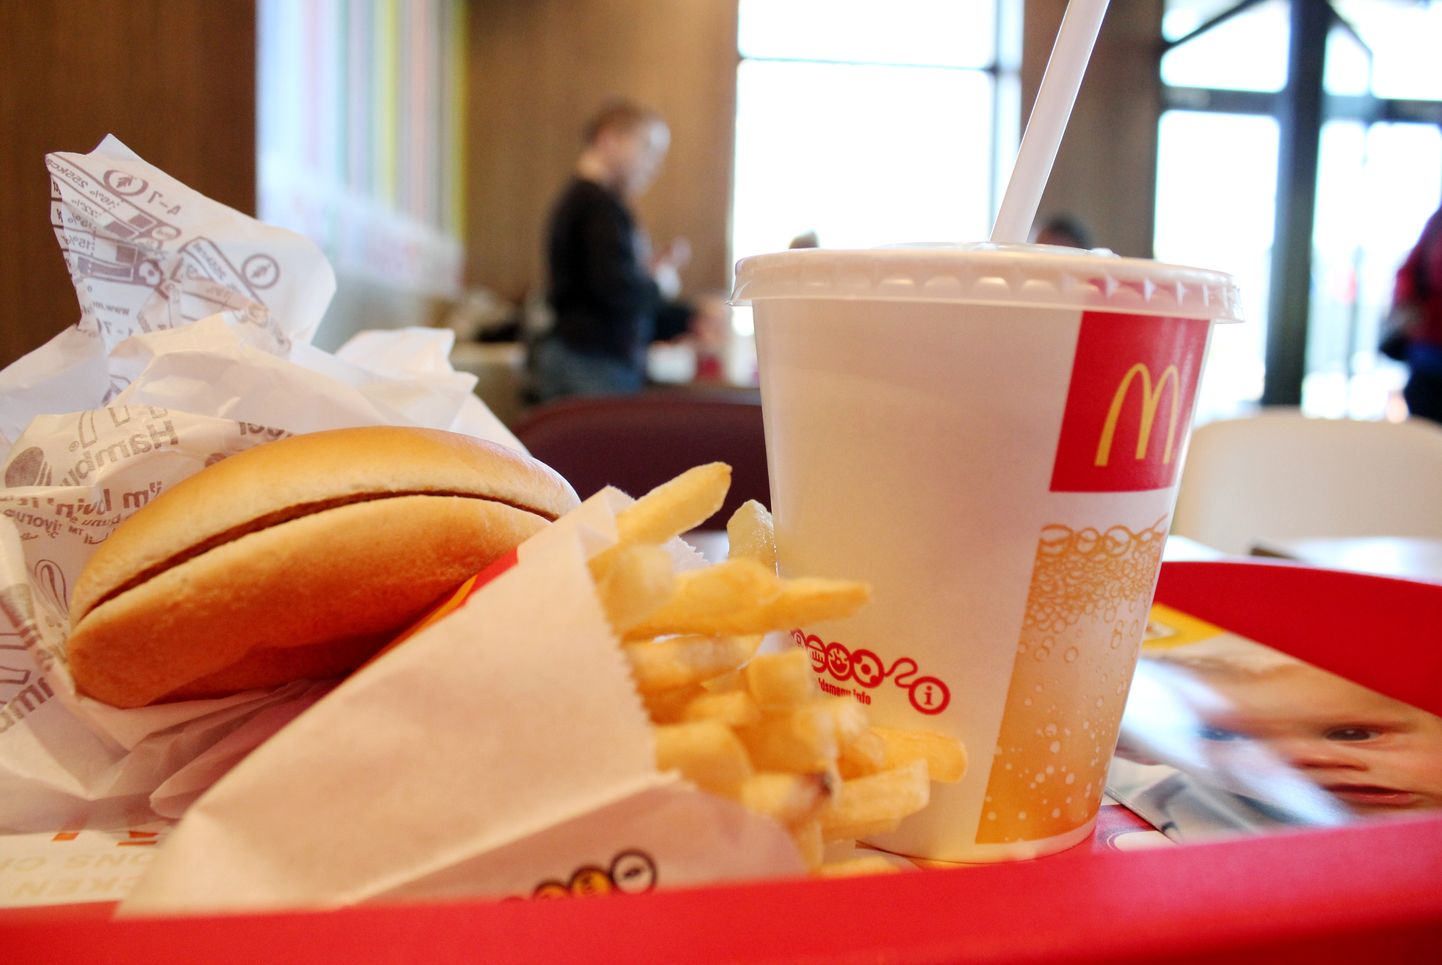 Ātrās apkalpošanas restorān "McDonalds" ēdiens.